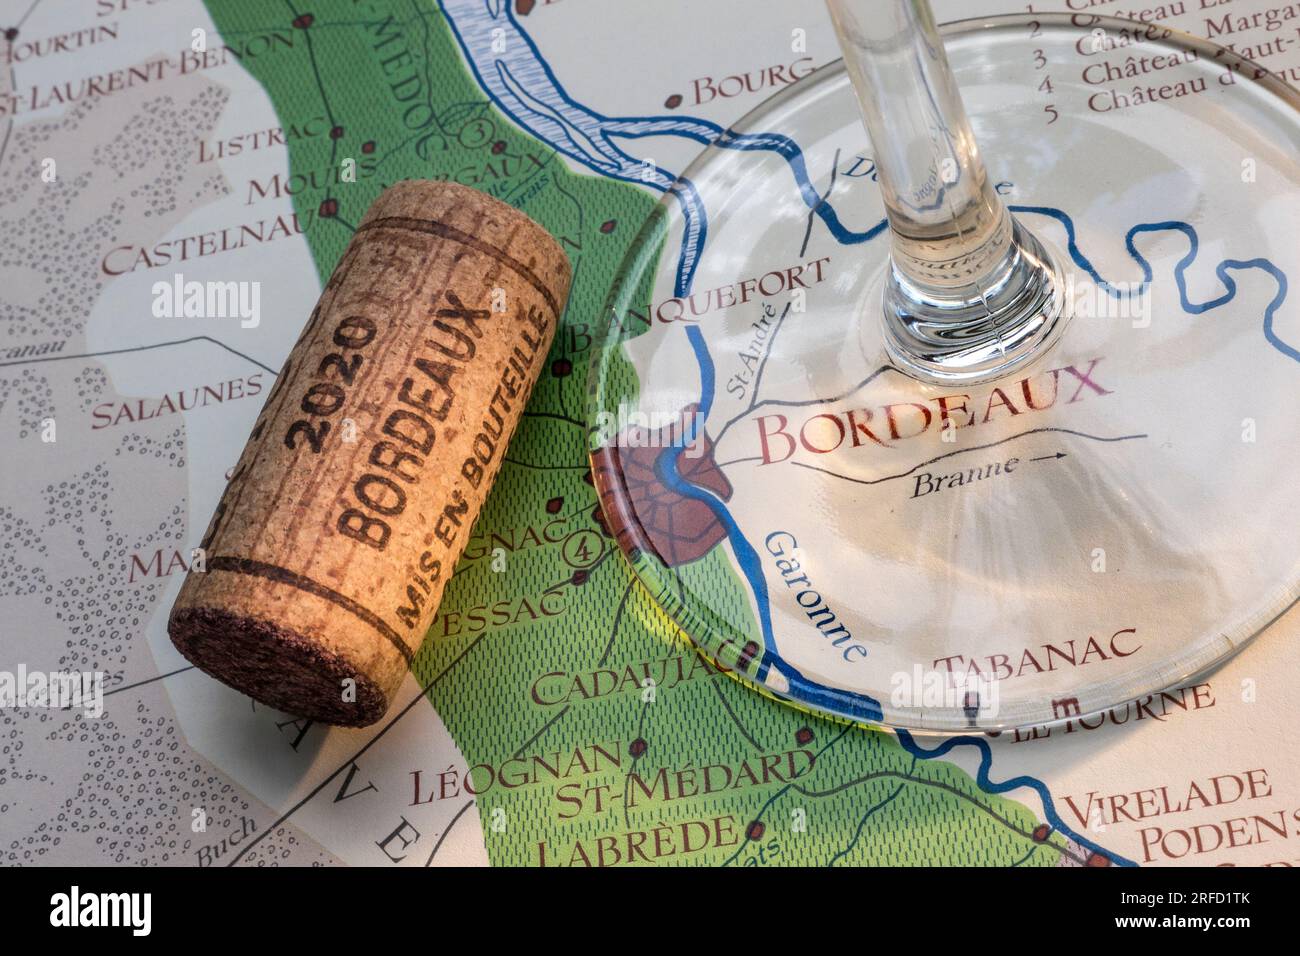 Bordeaux 2020 degustazione di vini francese, mappa del tour in sughero, con bicchiere di vino, tappo in primo piano, sulla vecchia mappa storica delle aree vinicole di Bordeaux con bicchiere di vino. Foto Stock